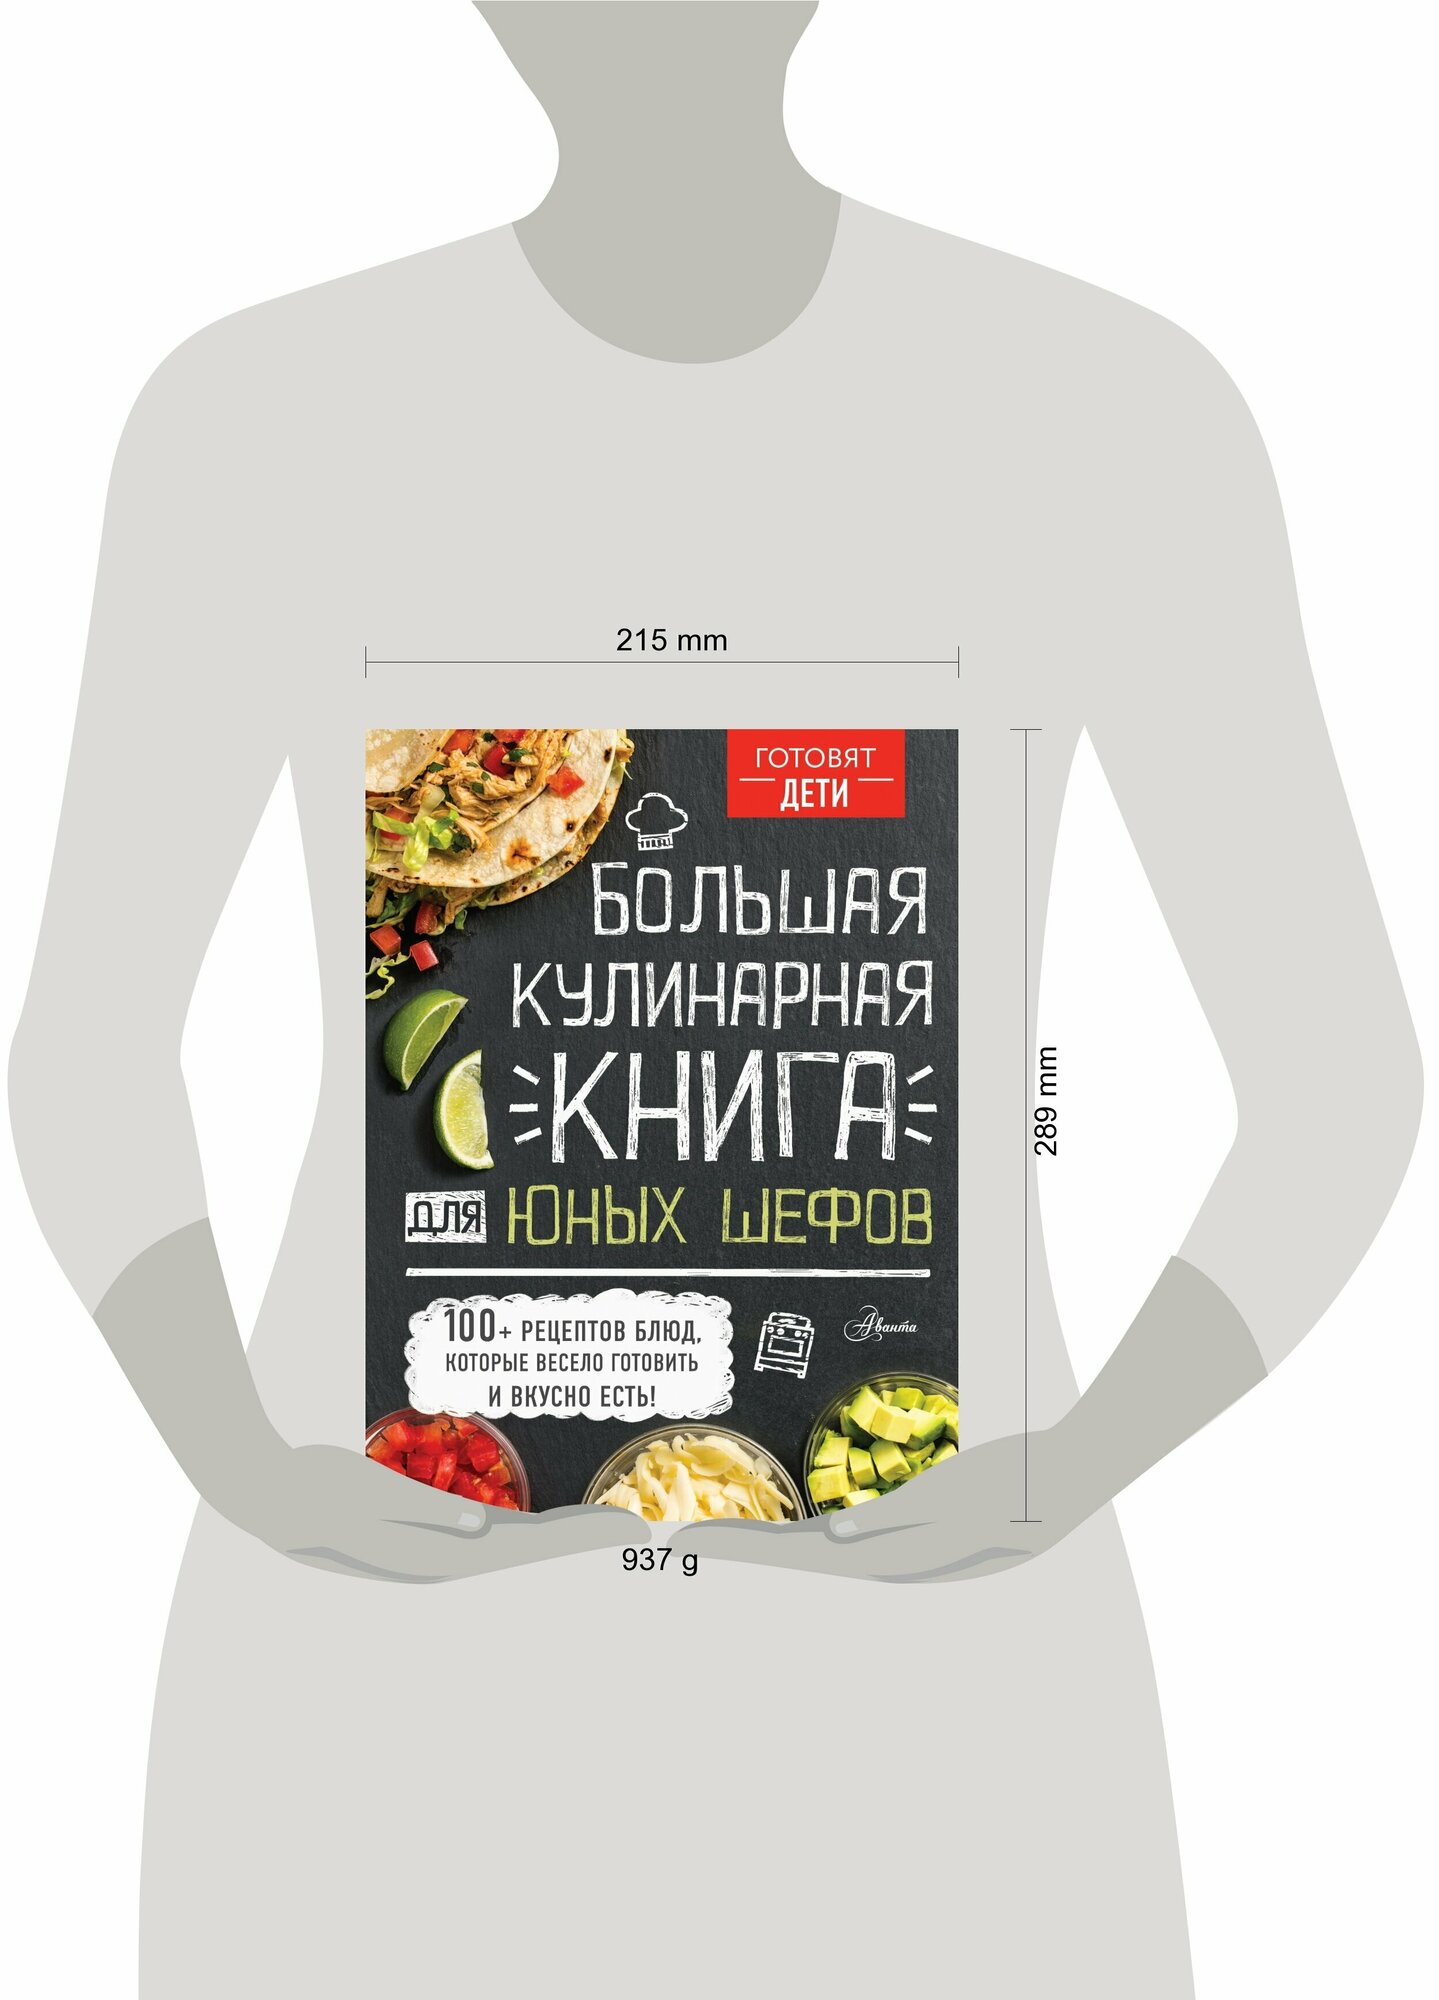 Большая кулинарная книга для юных шефов - фото №11